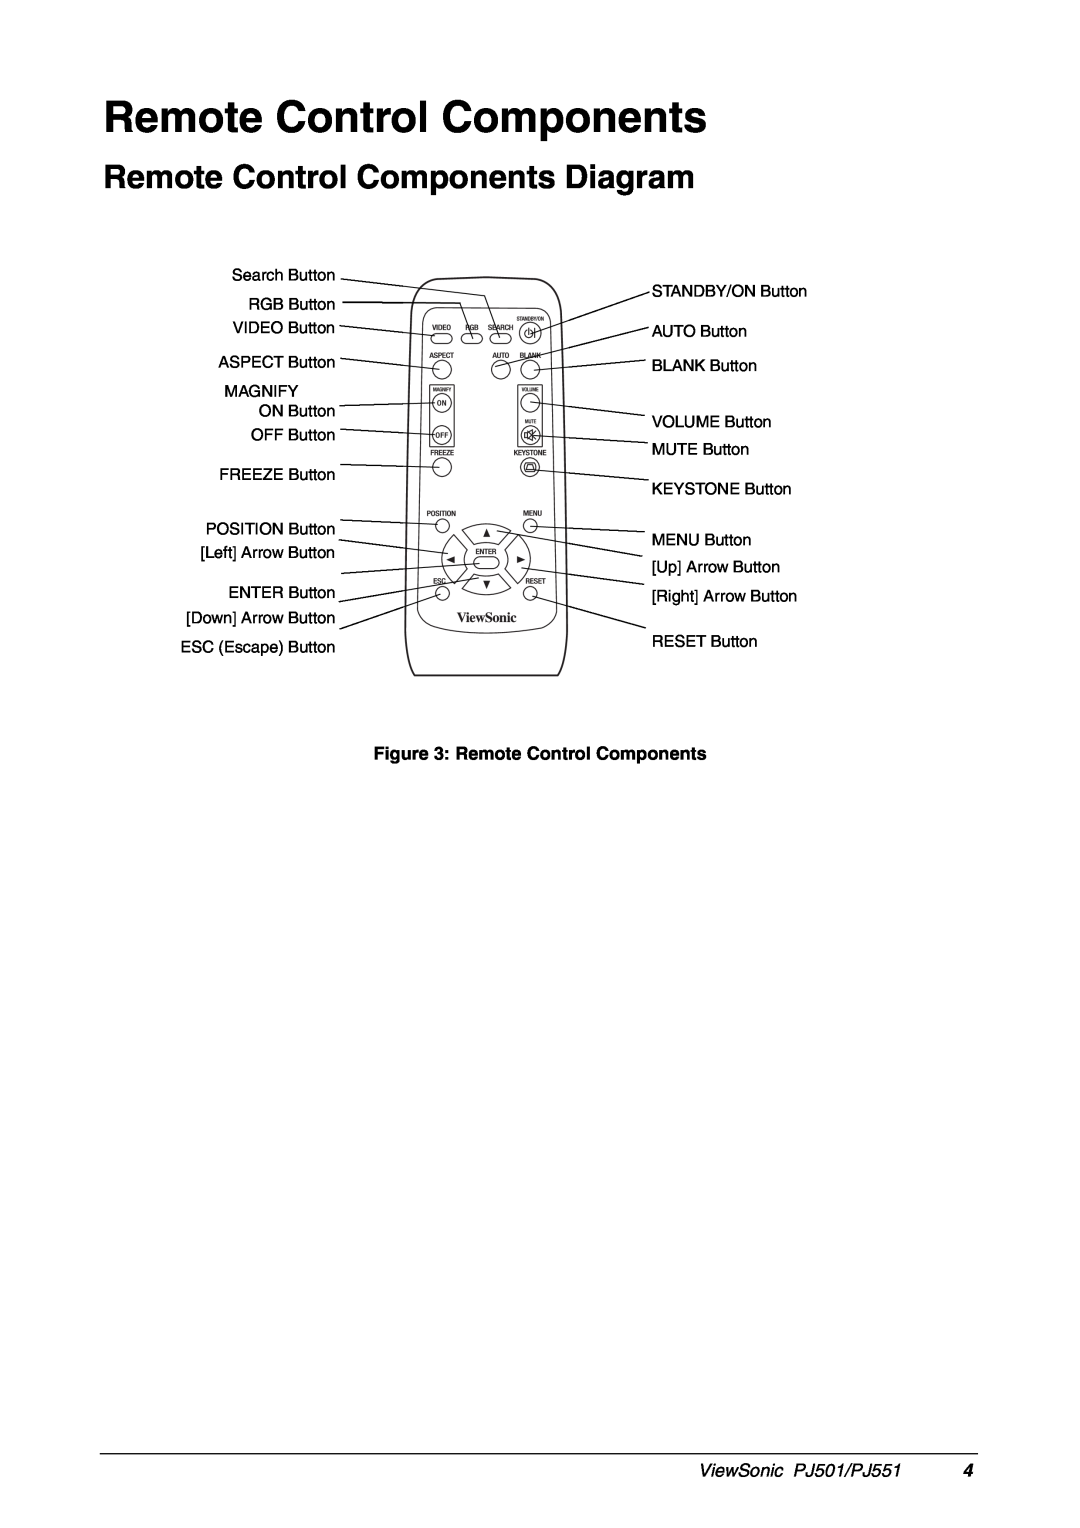 ViewSonic manual Remote Control Components Diagram, ViewSonic PJ501/PJ551 